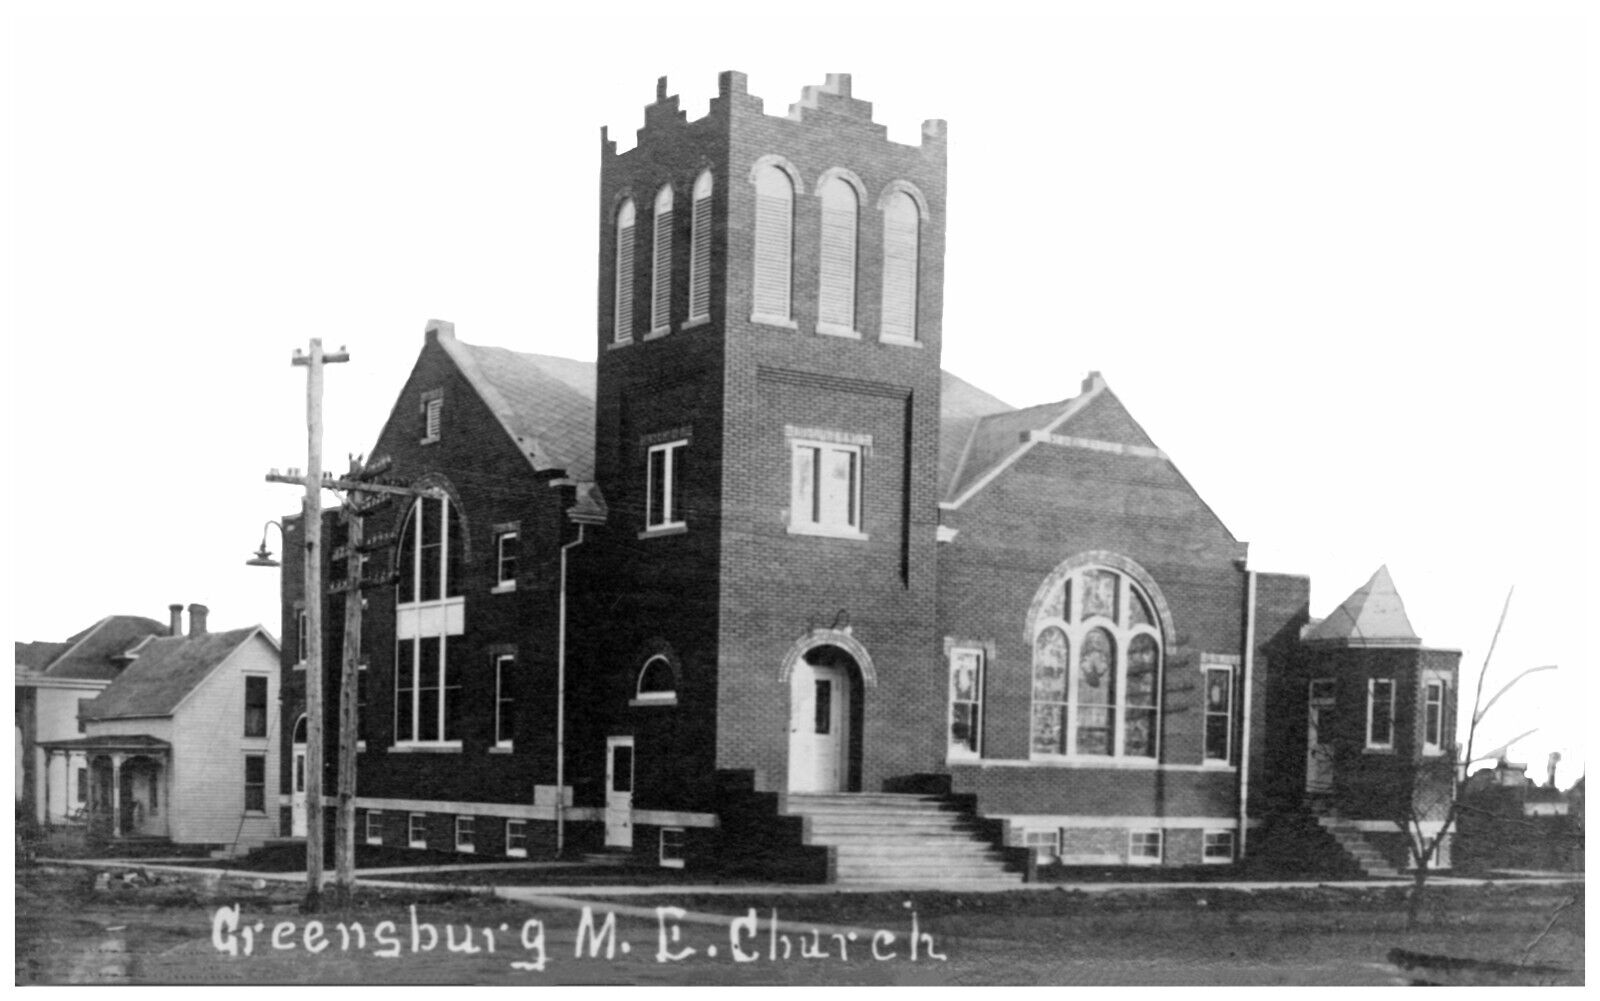 Greensburg Kansas M. E. Church Reprint Postcard  #85336